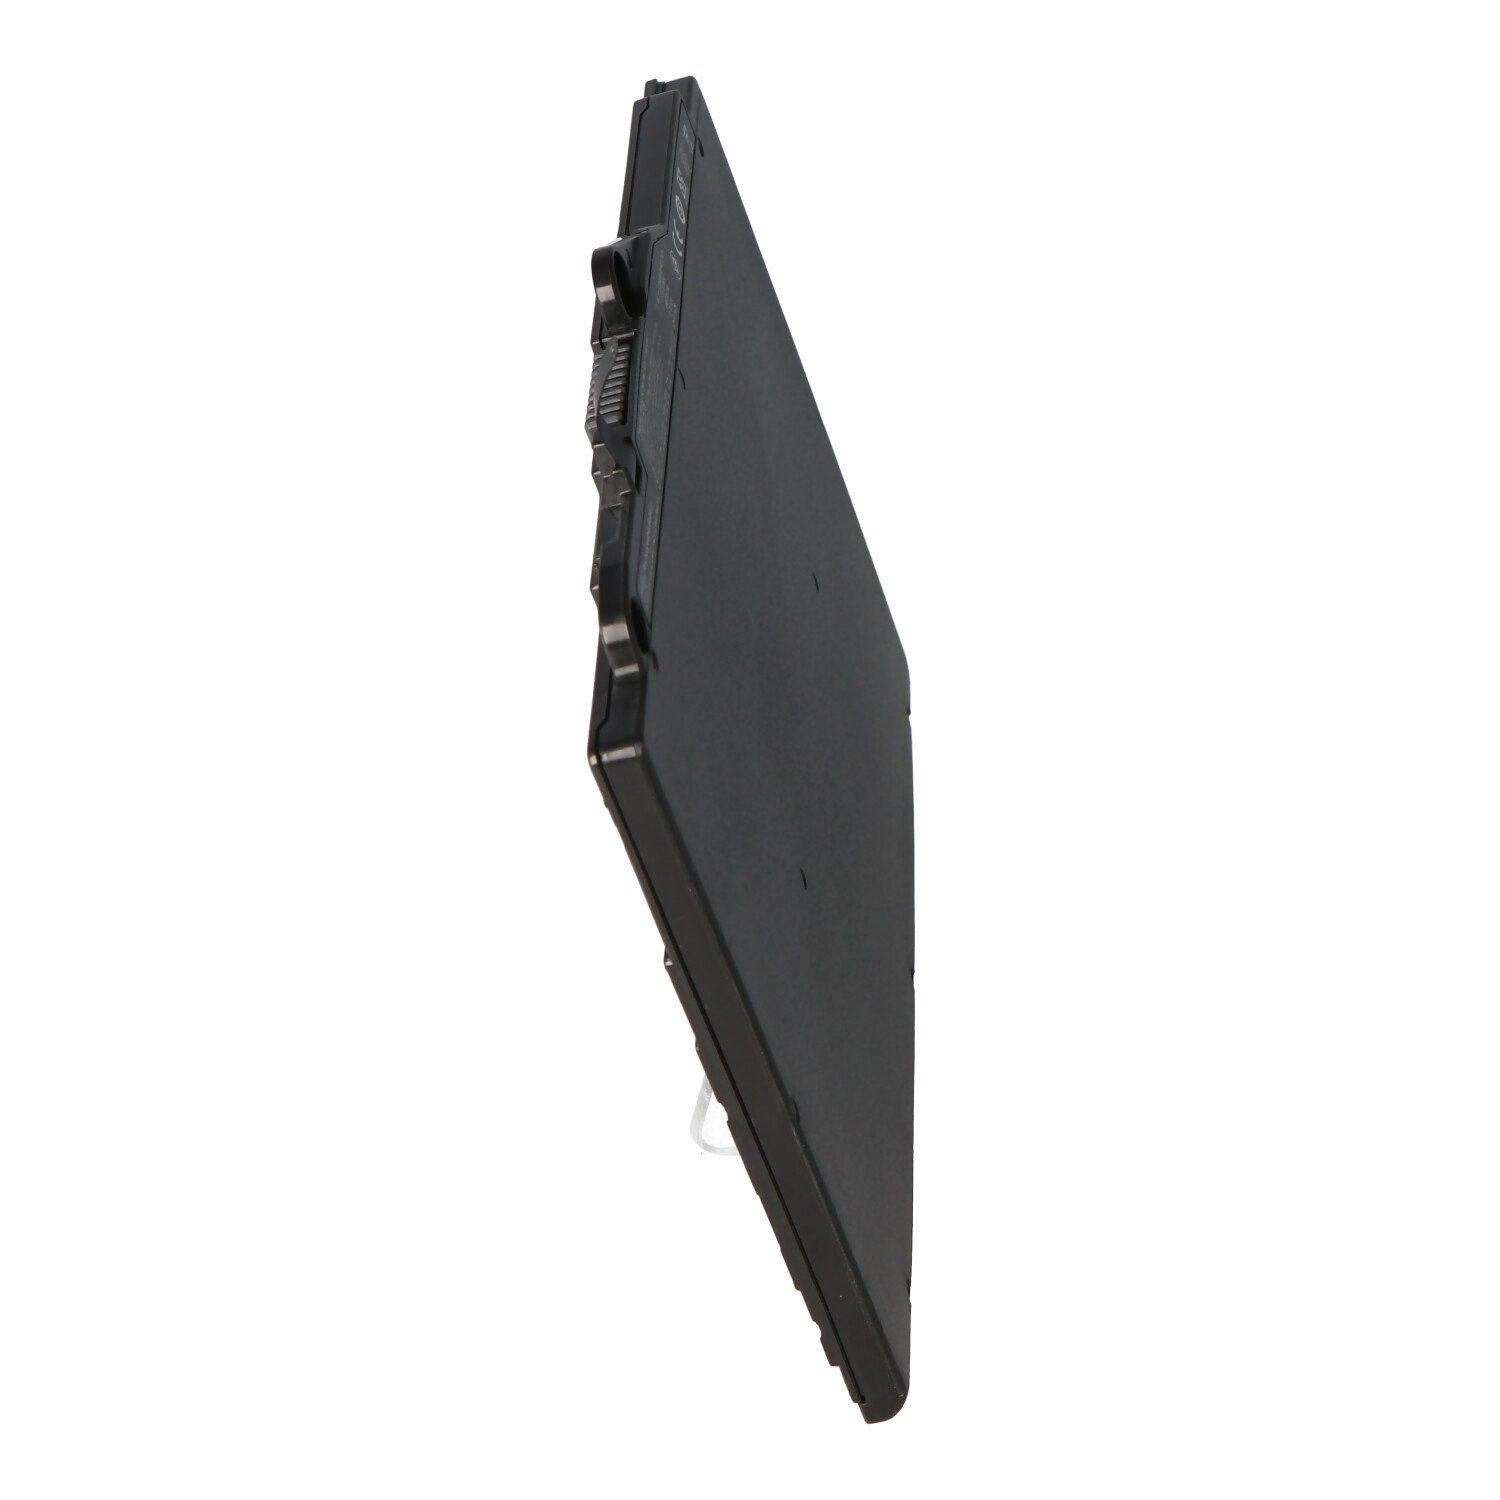 3850 EliteBook AccuCell mAh 11,4V, (11,4 V) Li-Polymer, Akku 725 G3, G3, HP 820 3700 Akku für passend